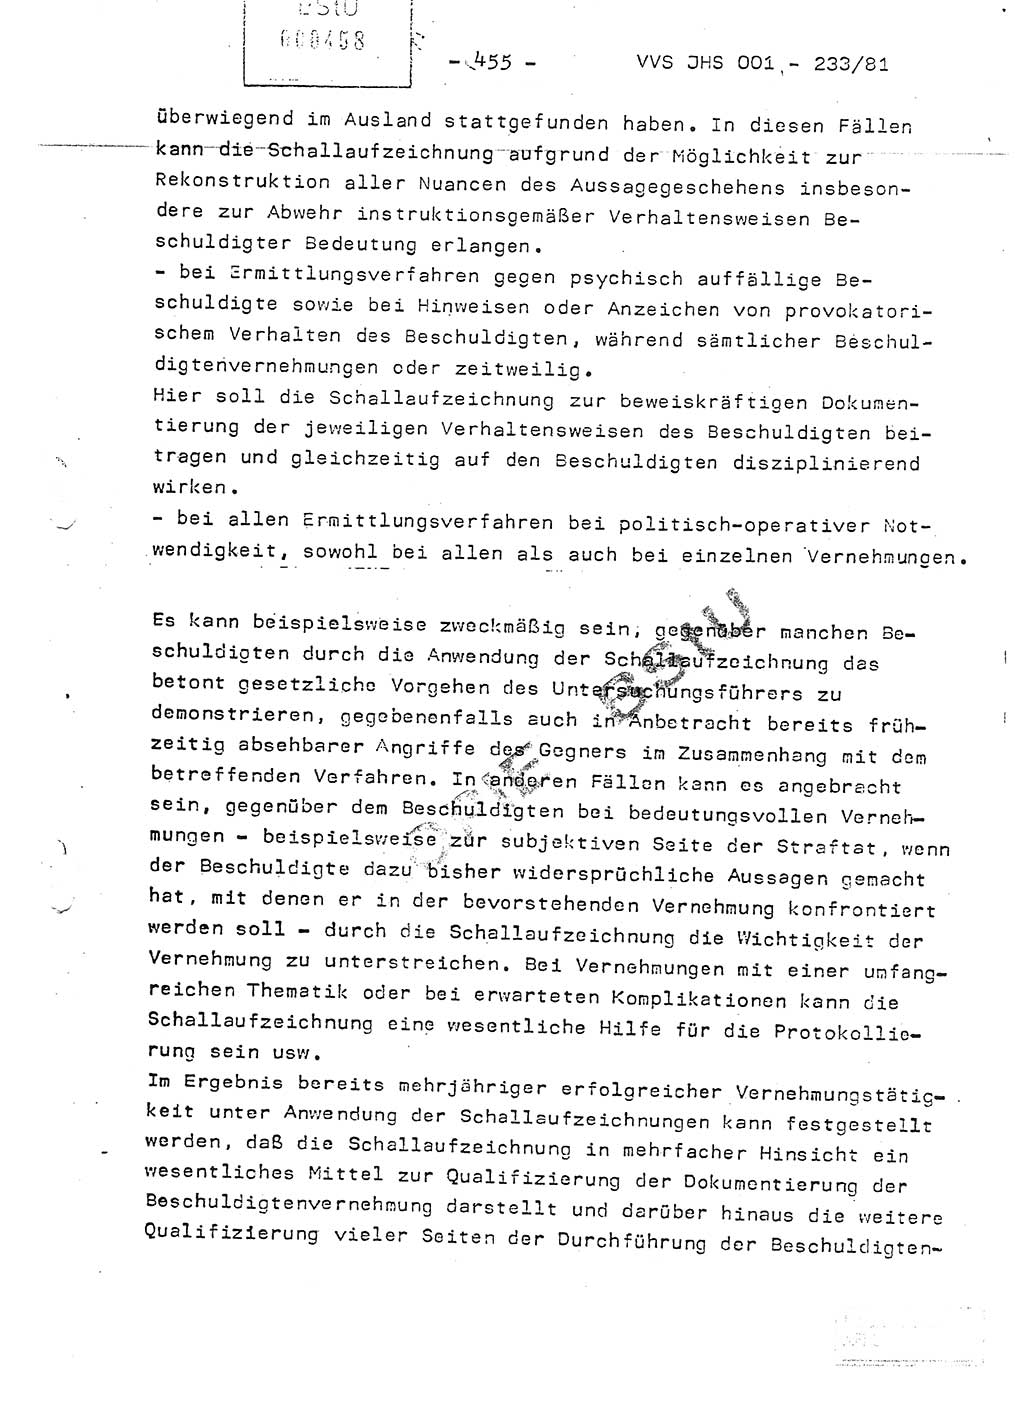 Dissertation Oberstleutnant Horst Zank (JHS), Oberstleutnant Dr. Karl-Heinz Knoblauch (JHS), Oberstleutnant Gustav-Adolf Kowalewski (HA Ⅸ), Oberstleutnant Wolfgang Plötner (HA Ⅸ), Ministerium für Staatssicherheit (MfS) [Deutsche Demokratische Republik (DDR)], Juristische Hochschule (JHS), Vertrauliche Verschlußsache (VVS) o001-233/81, Potsdam 1981, Blatt 455 (Diss. MfS DDR JHS VVS o001-233/81 1981, Bl. 455)